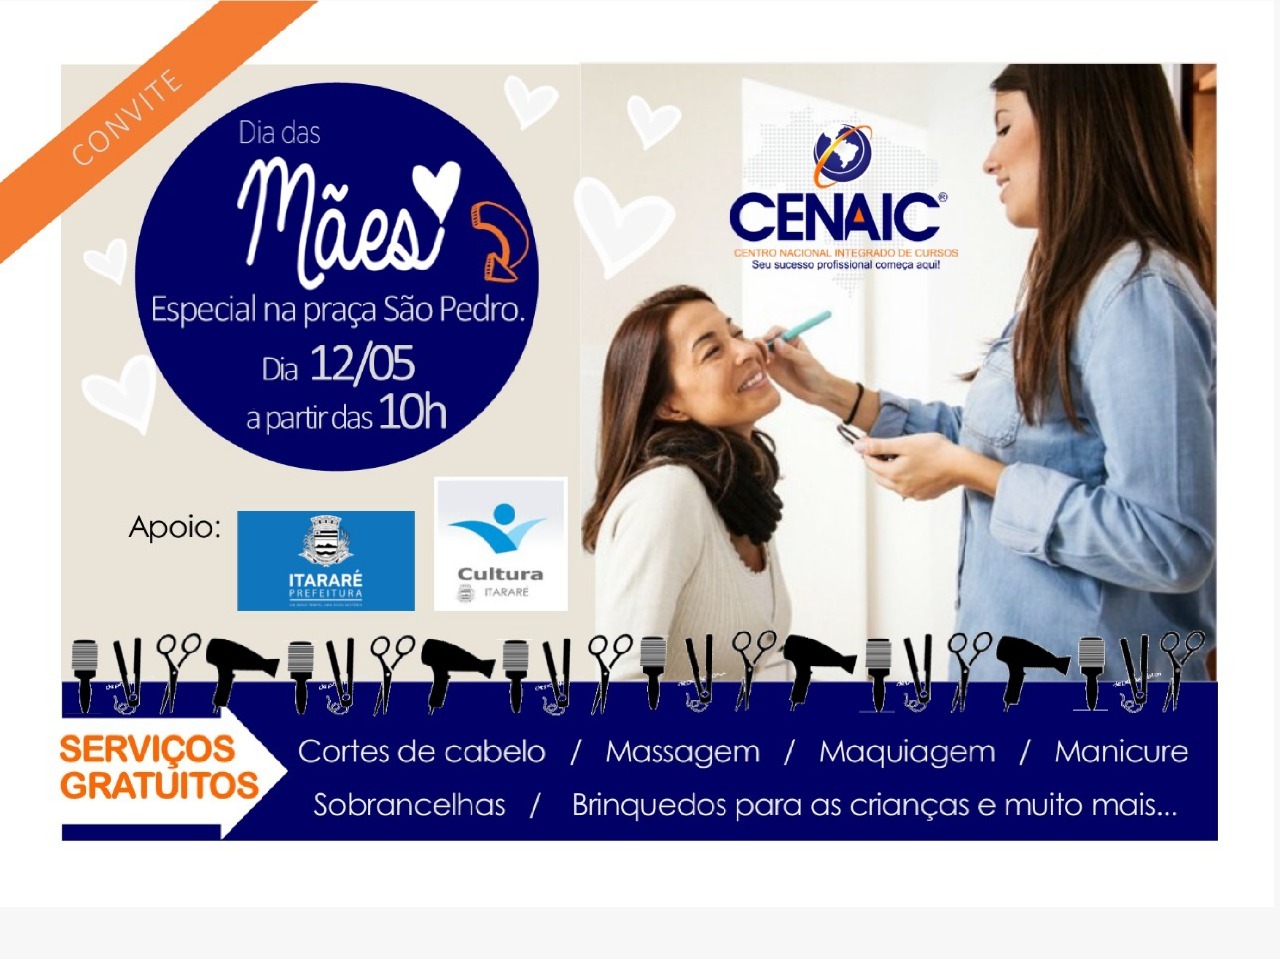 Prefeitura, em parceria com Cenaic, vai oferecer serviços de beleza gratuitos neste sábado (12) em Itararé (SP)